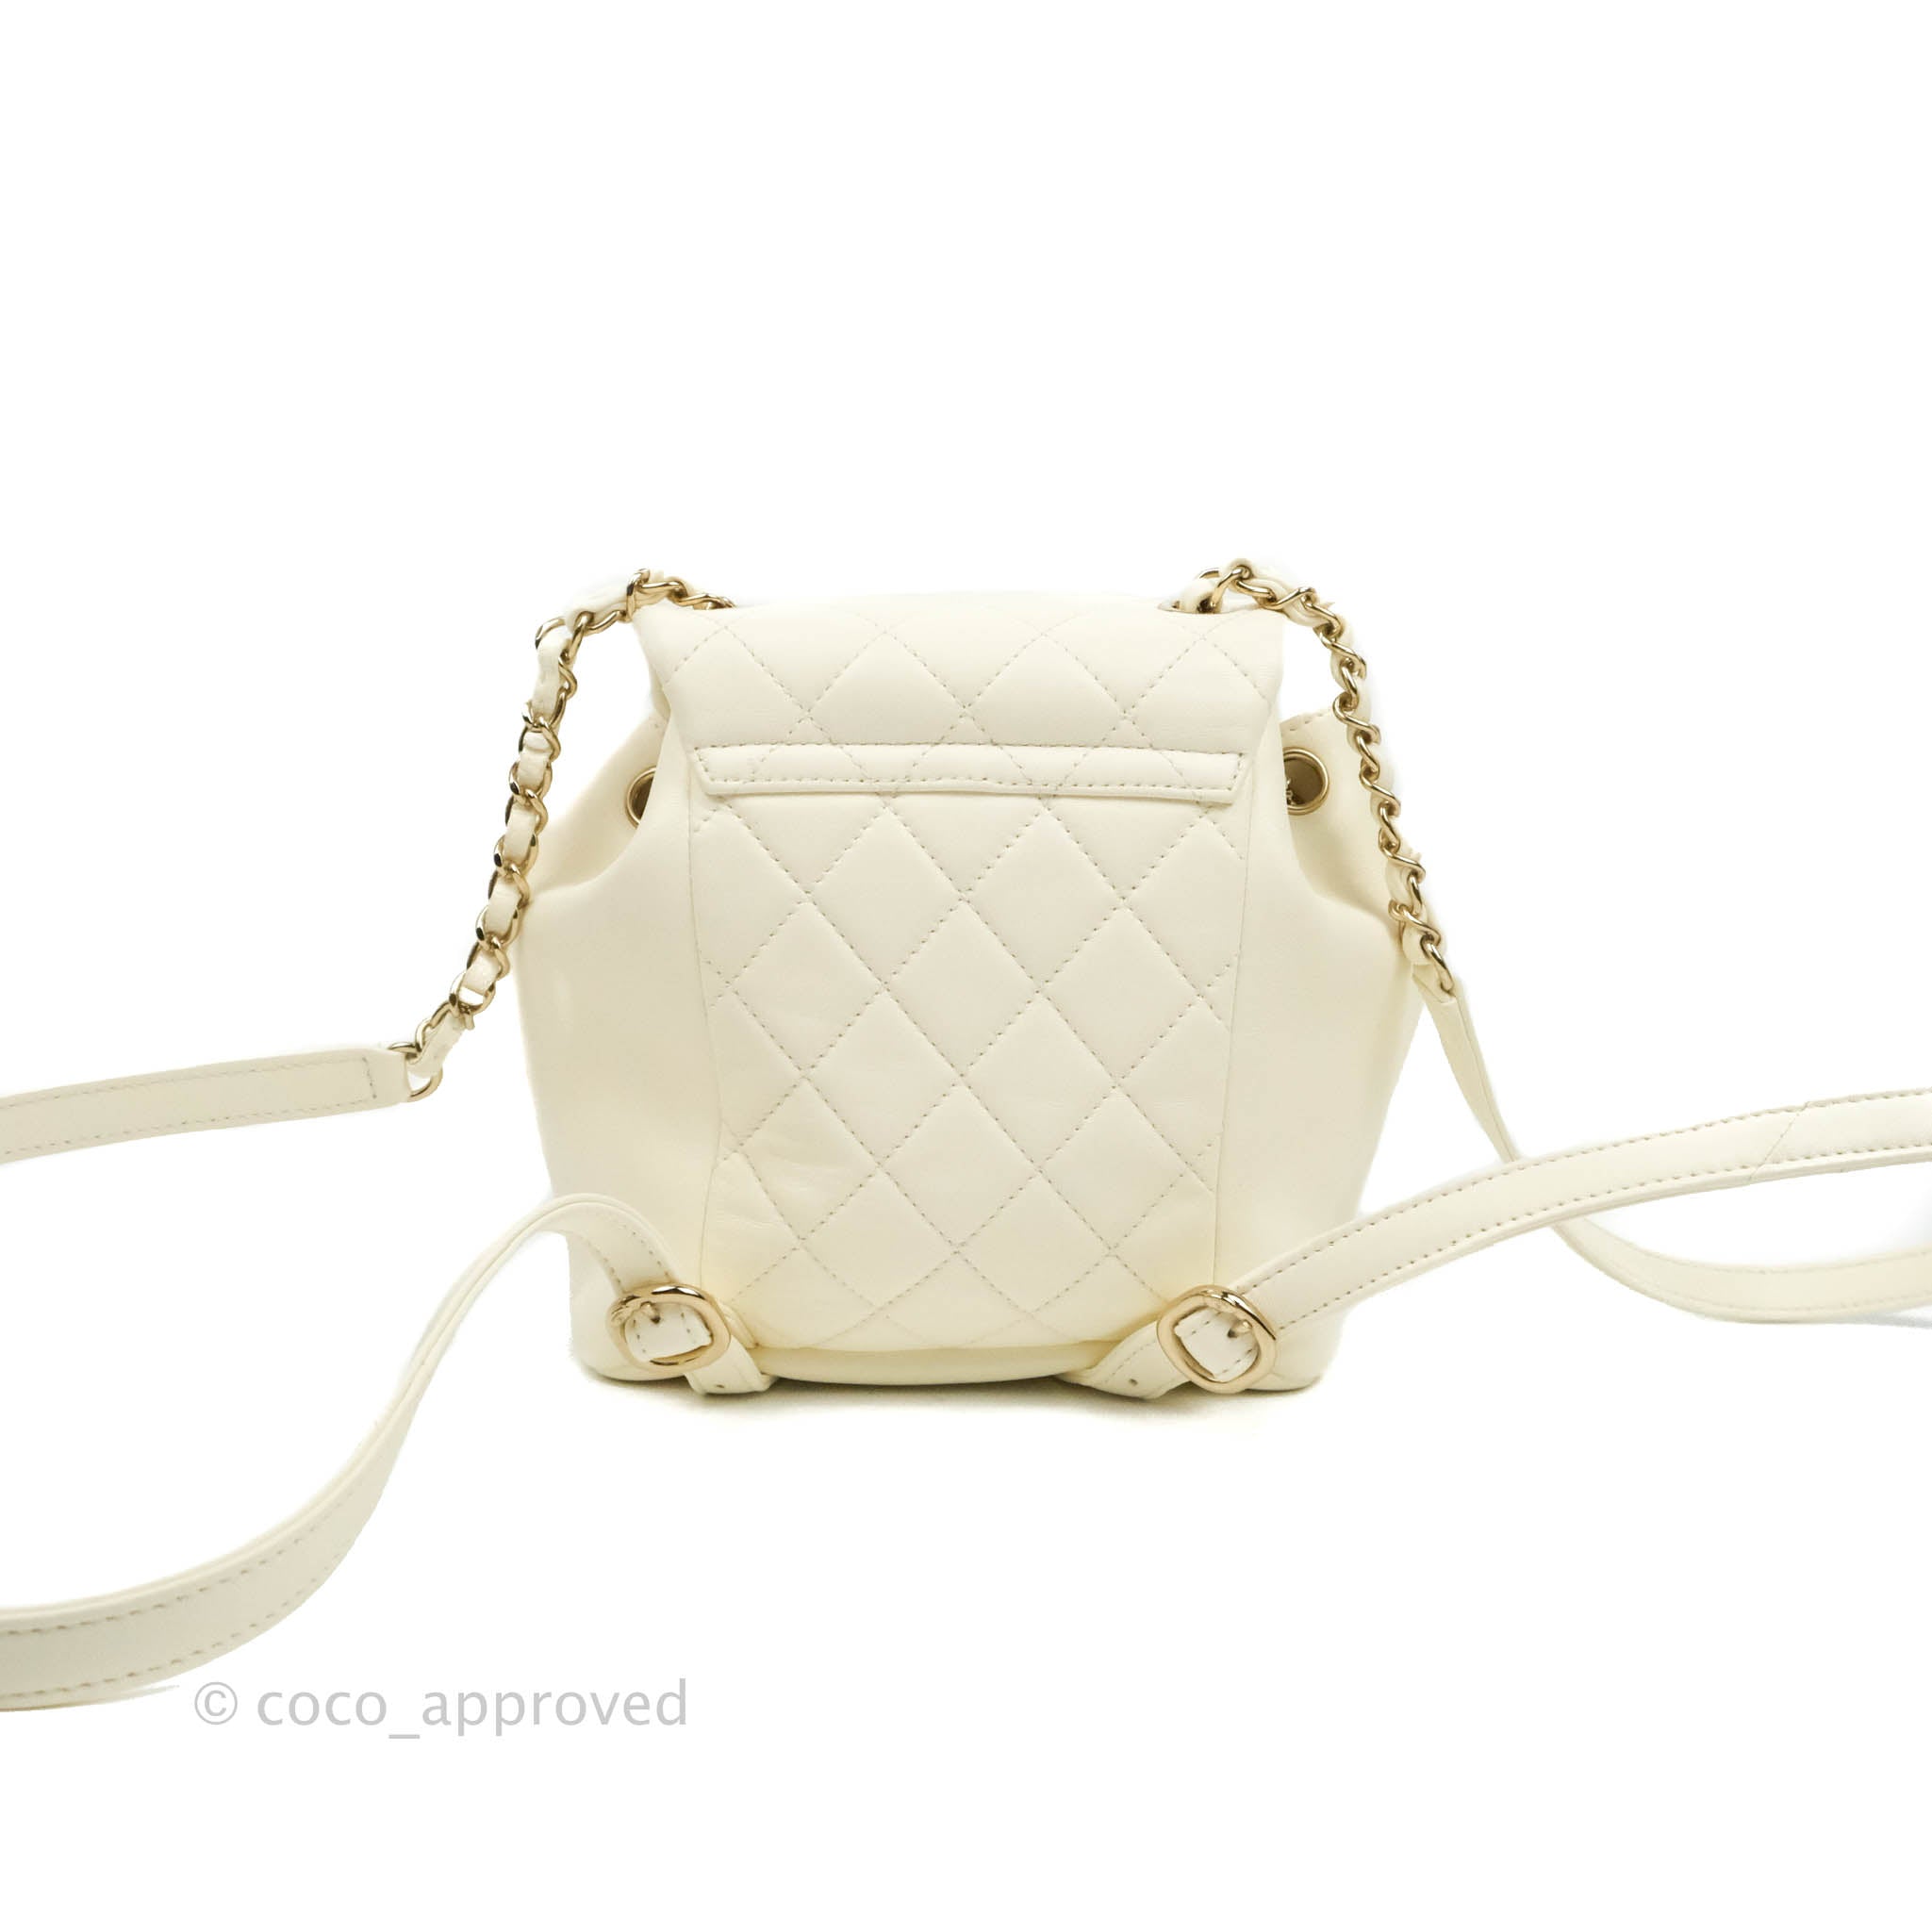 Chanel White Shiny Aged Quilted Lambskin Small Duma Drawstring Backpack, myGemma, AU